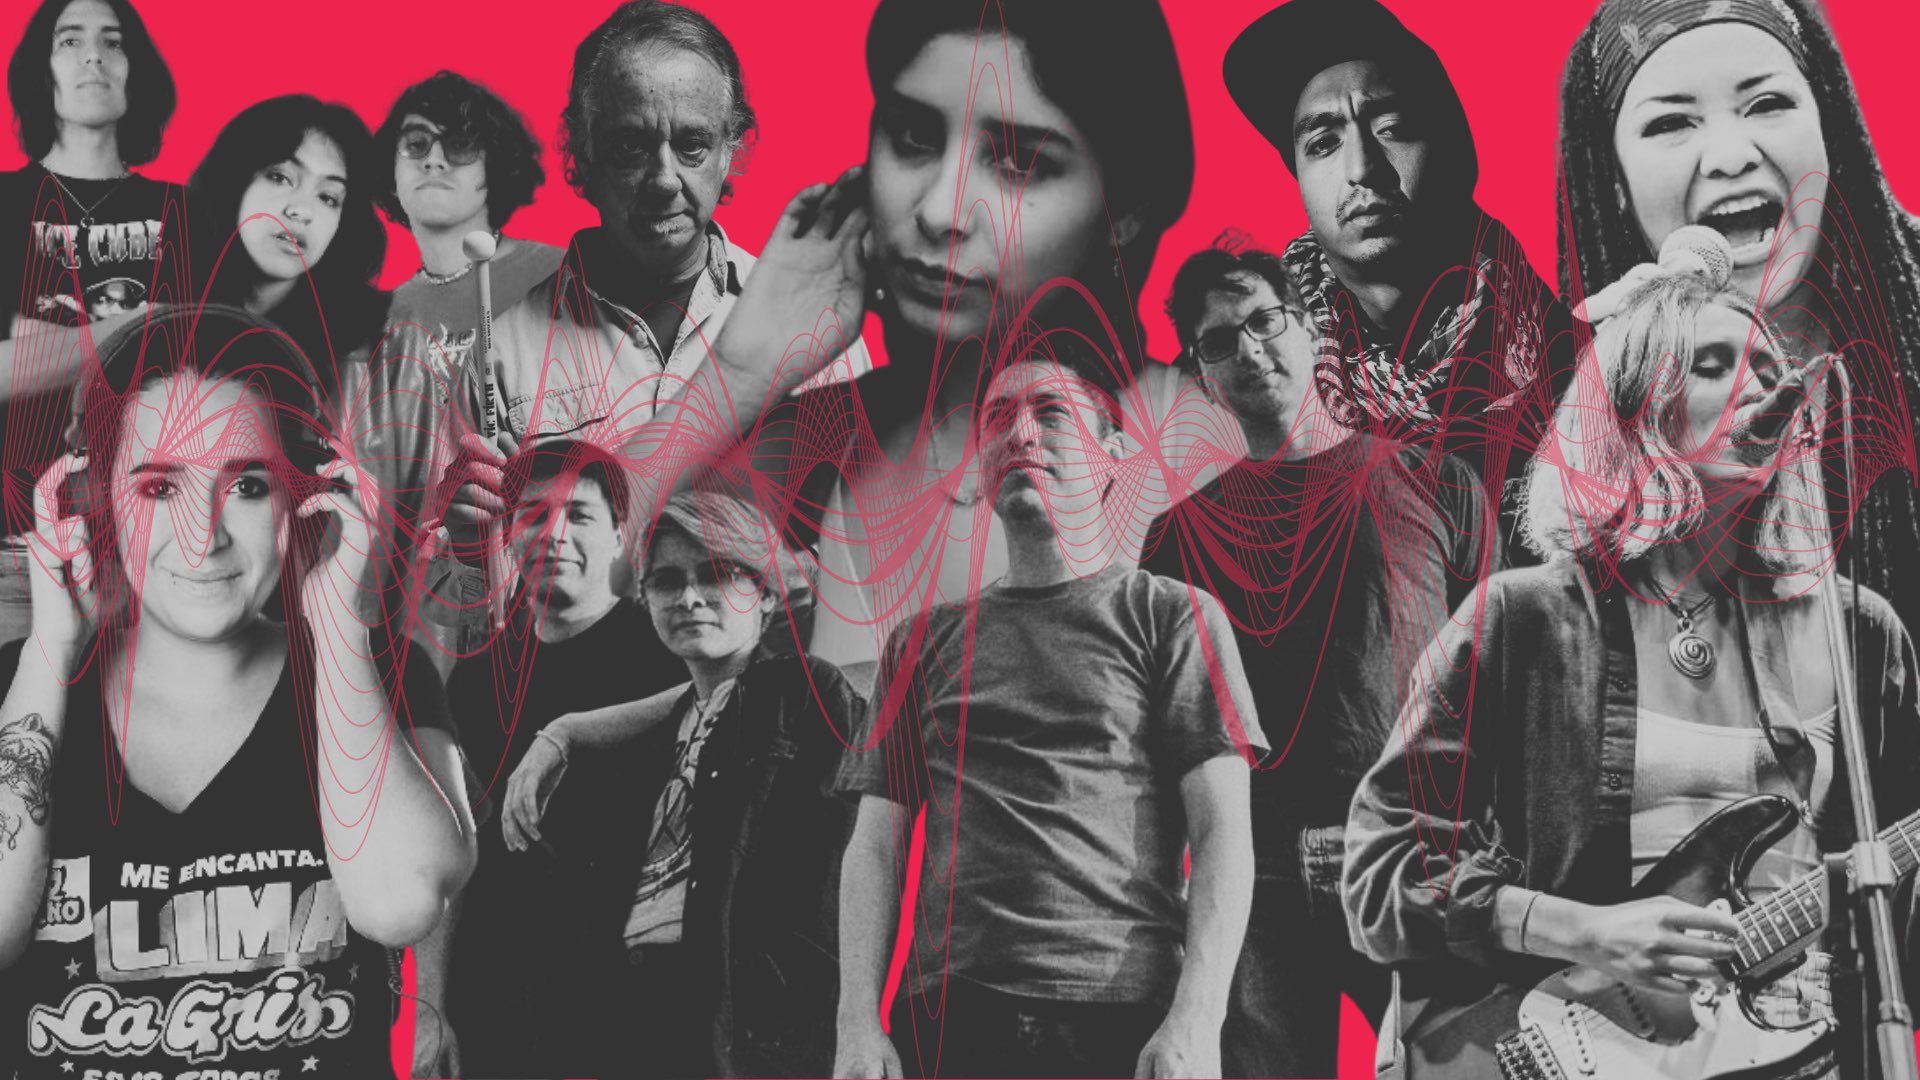 Satélite Menor, Santa Madero y otros artistas peruanos con nueva música en un collage con fondo rojo